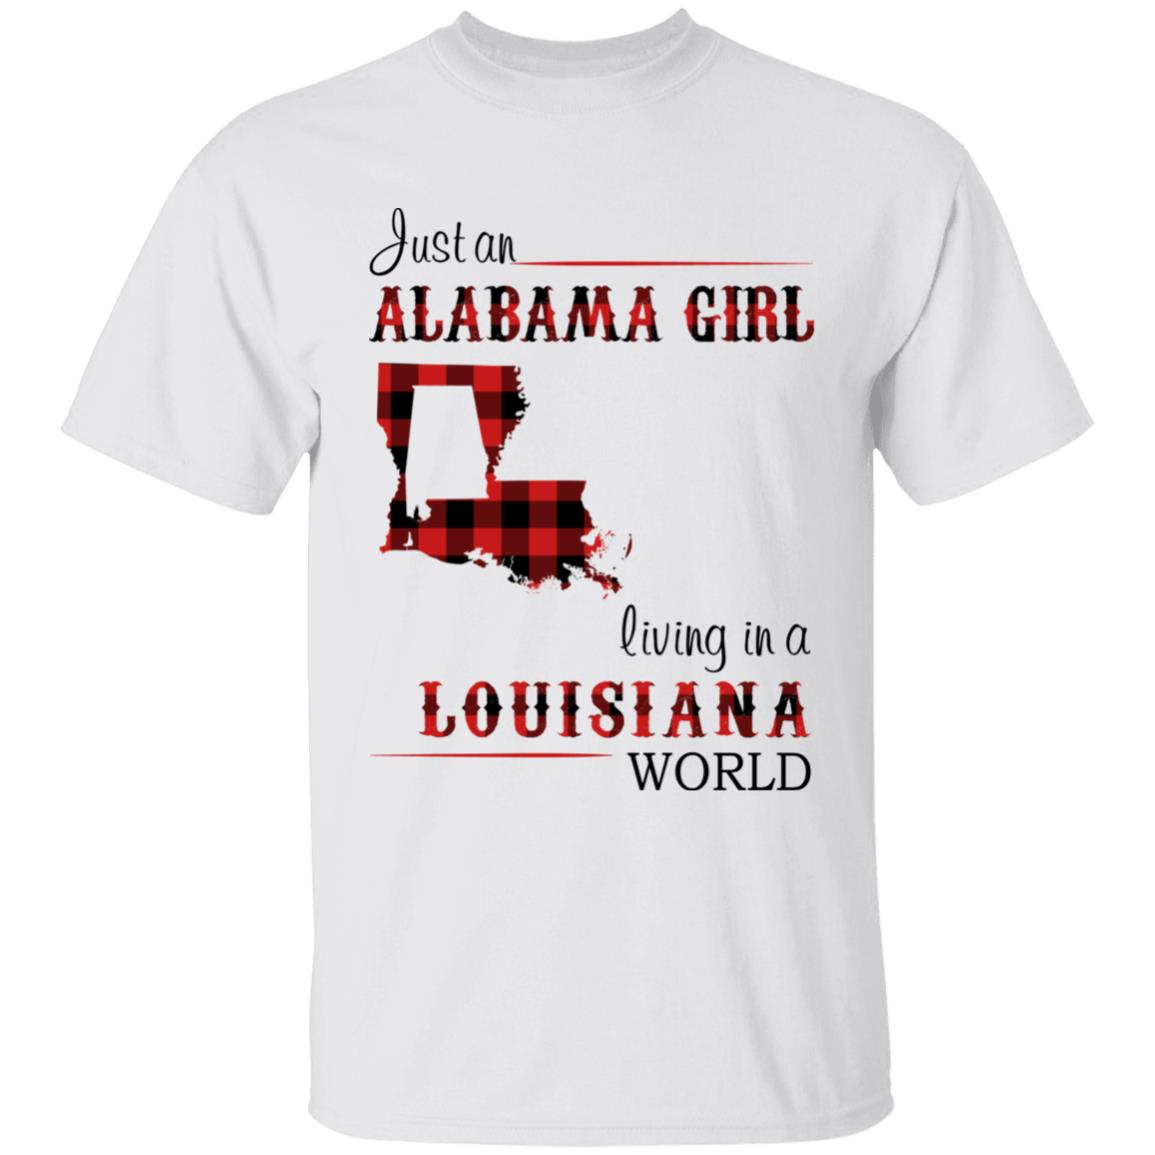 Just a Louisiana Girl in an Alabama World T-Shirt